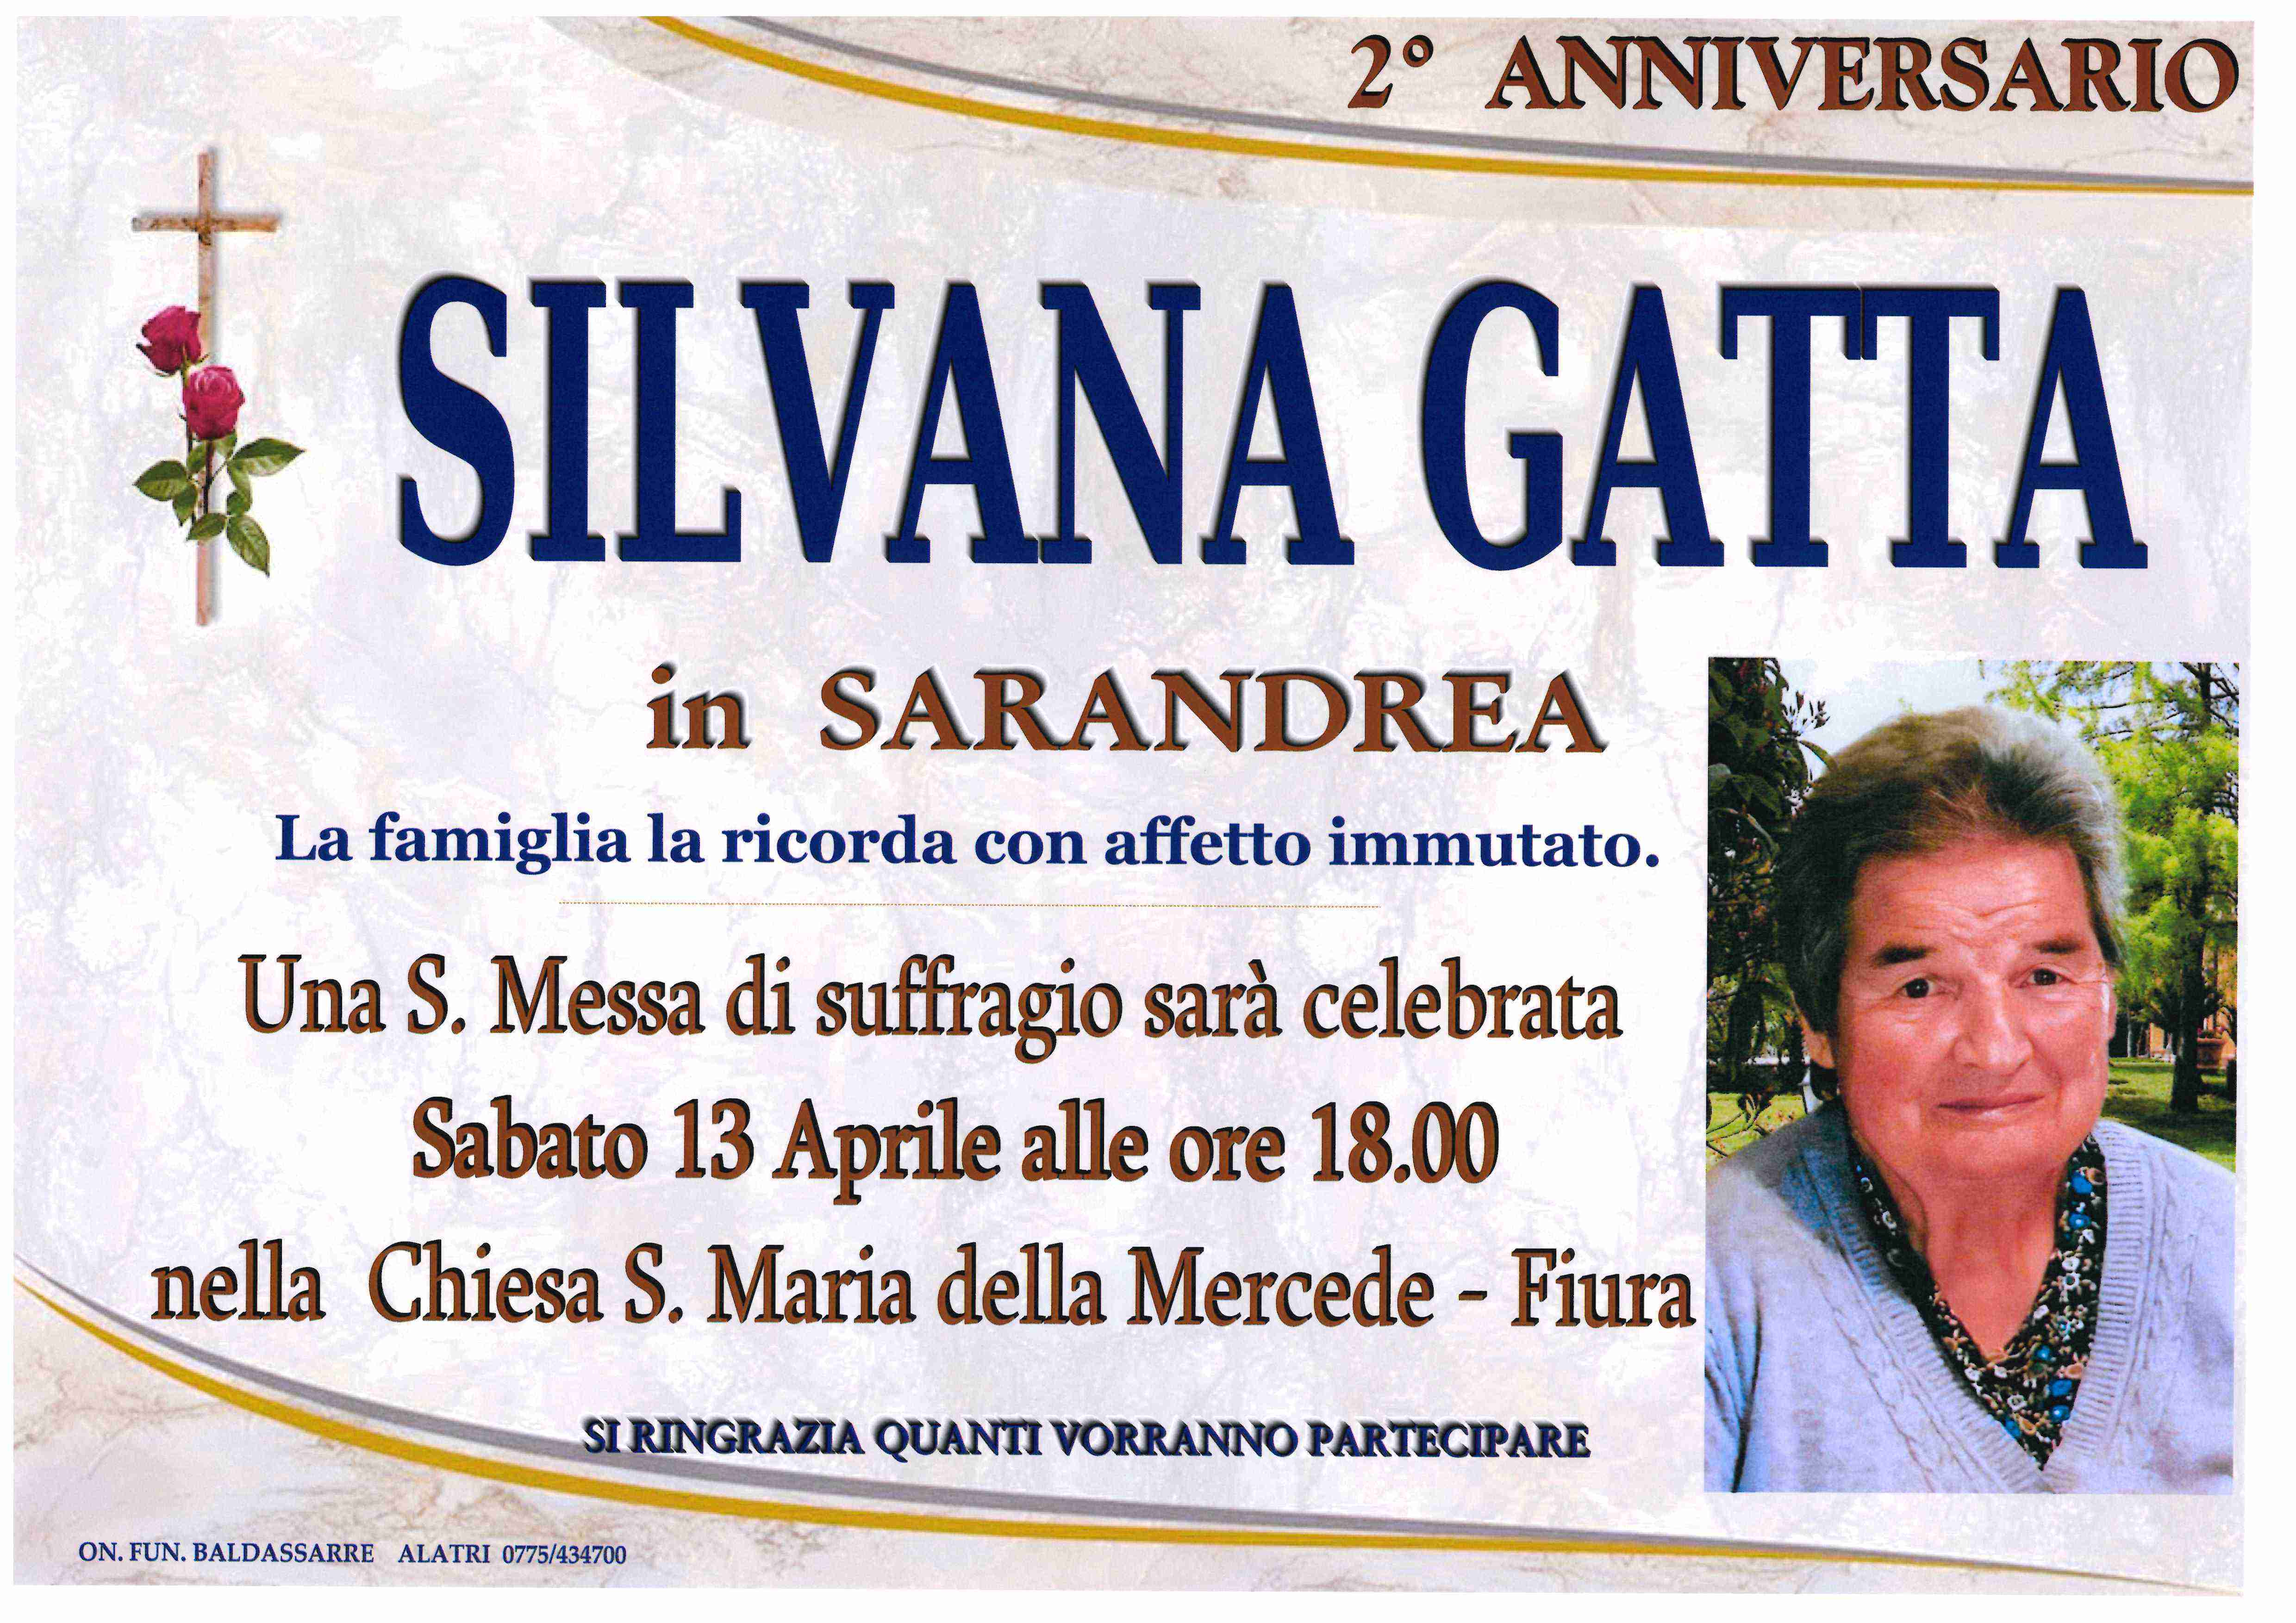 Silvana Gatta